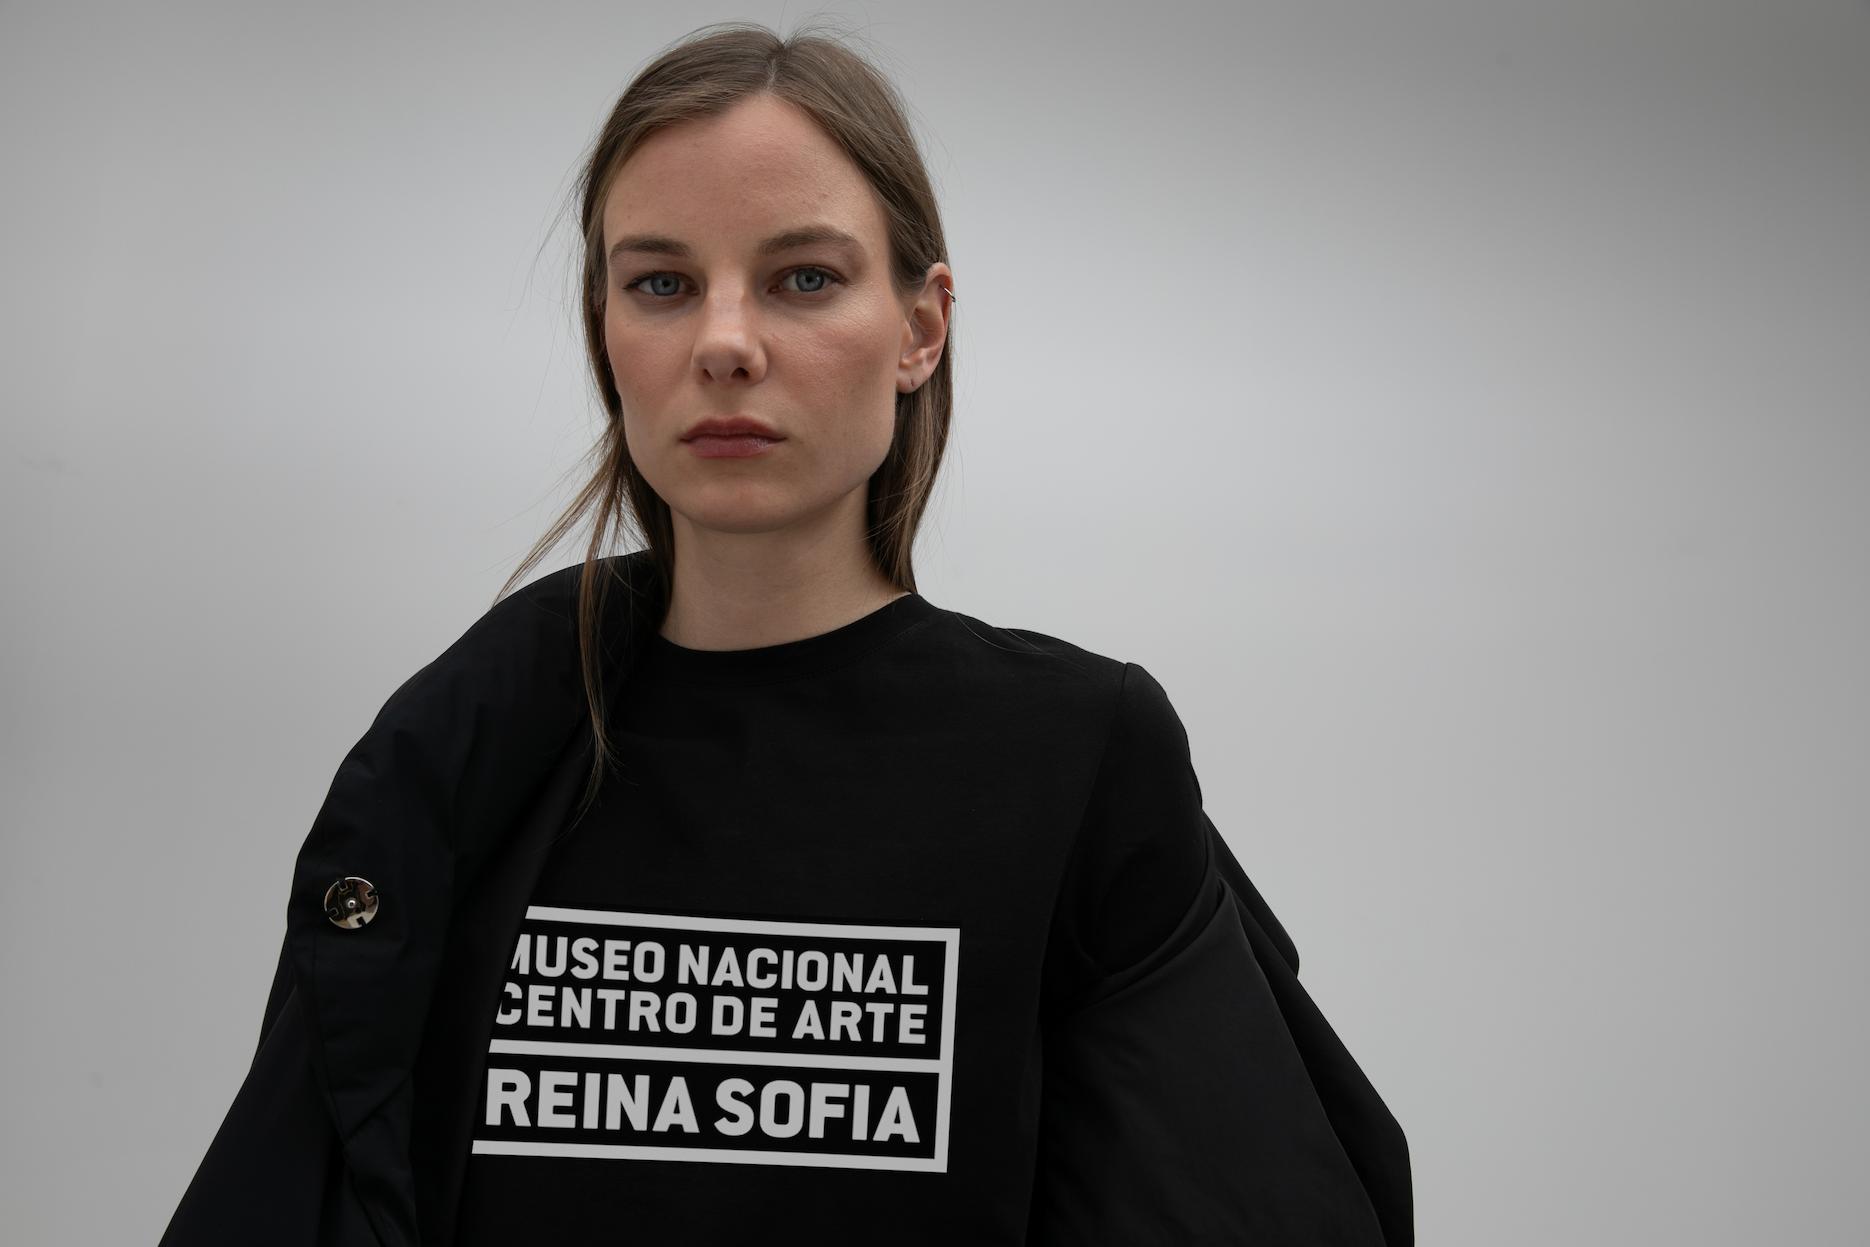 Uniforme Museo Reina Sofía para 2025 por Lola Casademunt by Maite